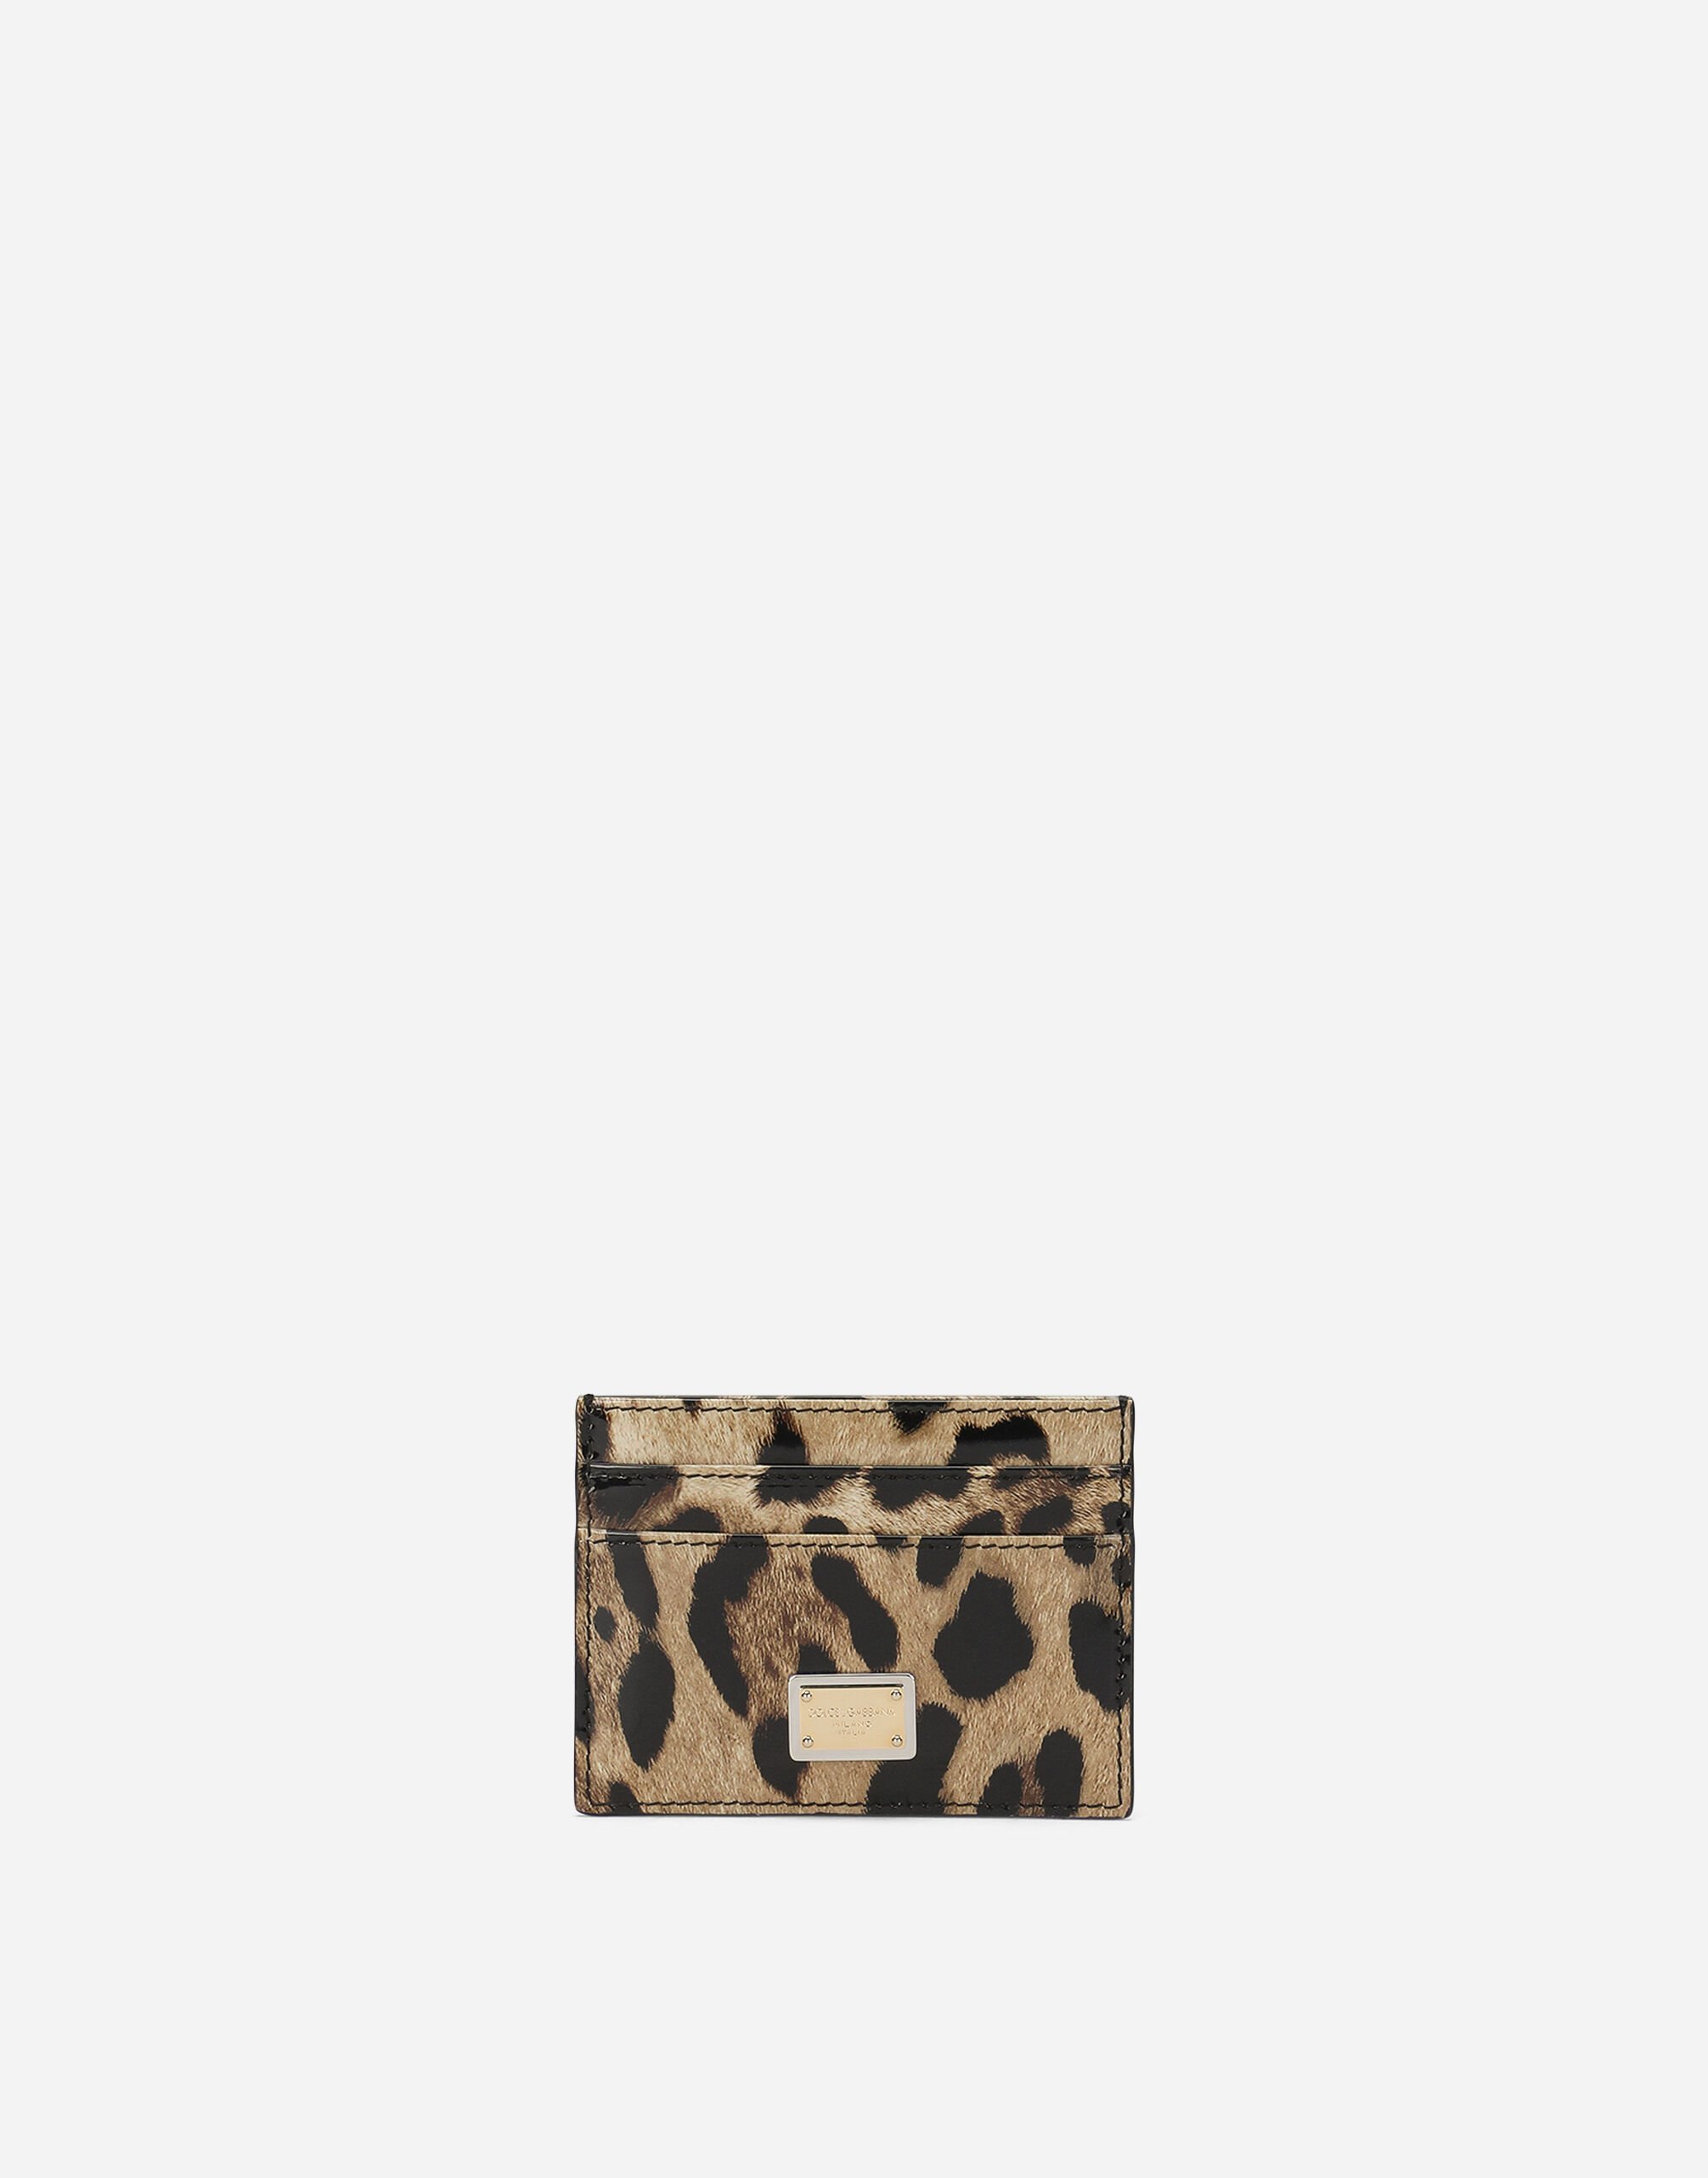 Dolce & Gabbana Polished calfskin card holder with leopard print Black BB7475AF984